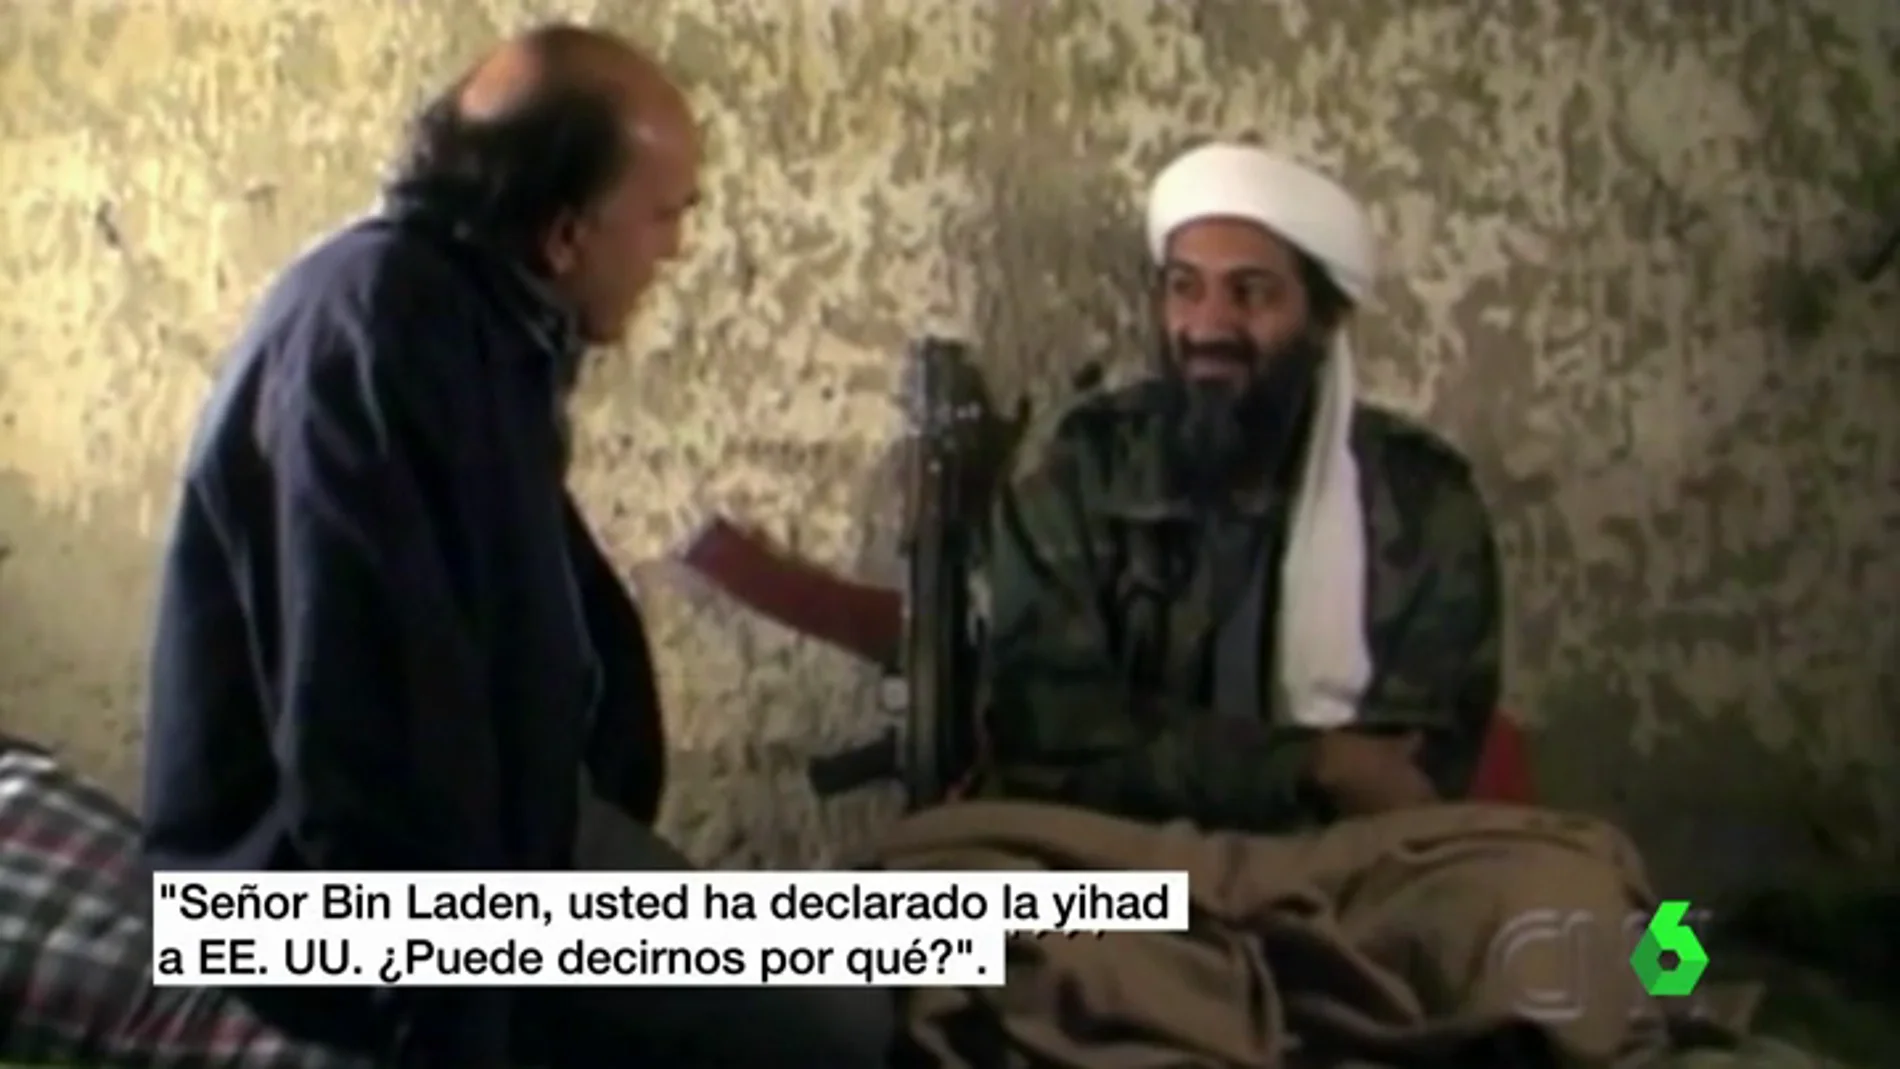 Imagen de Bin Laden en la que le preguntan si ha declarado la yihad a EEUU